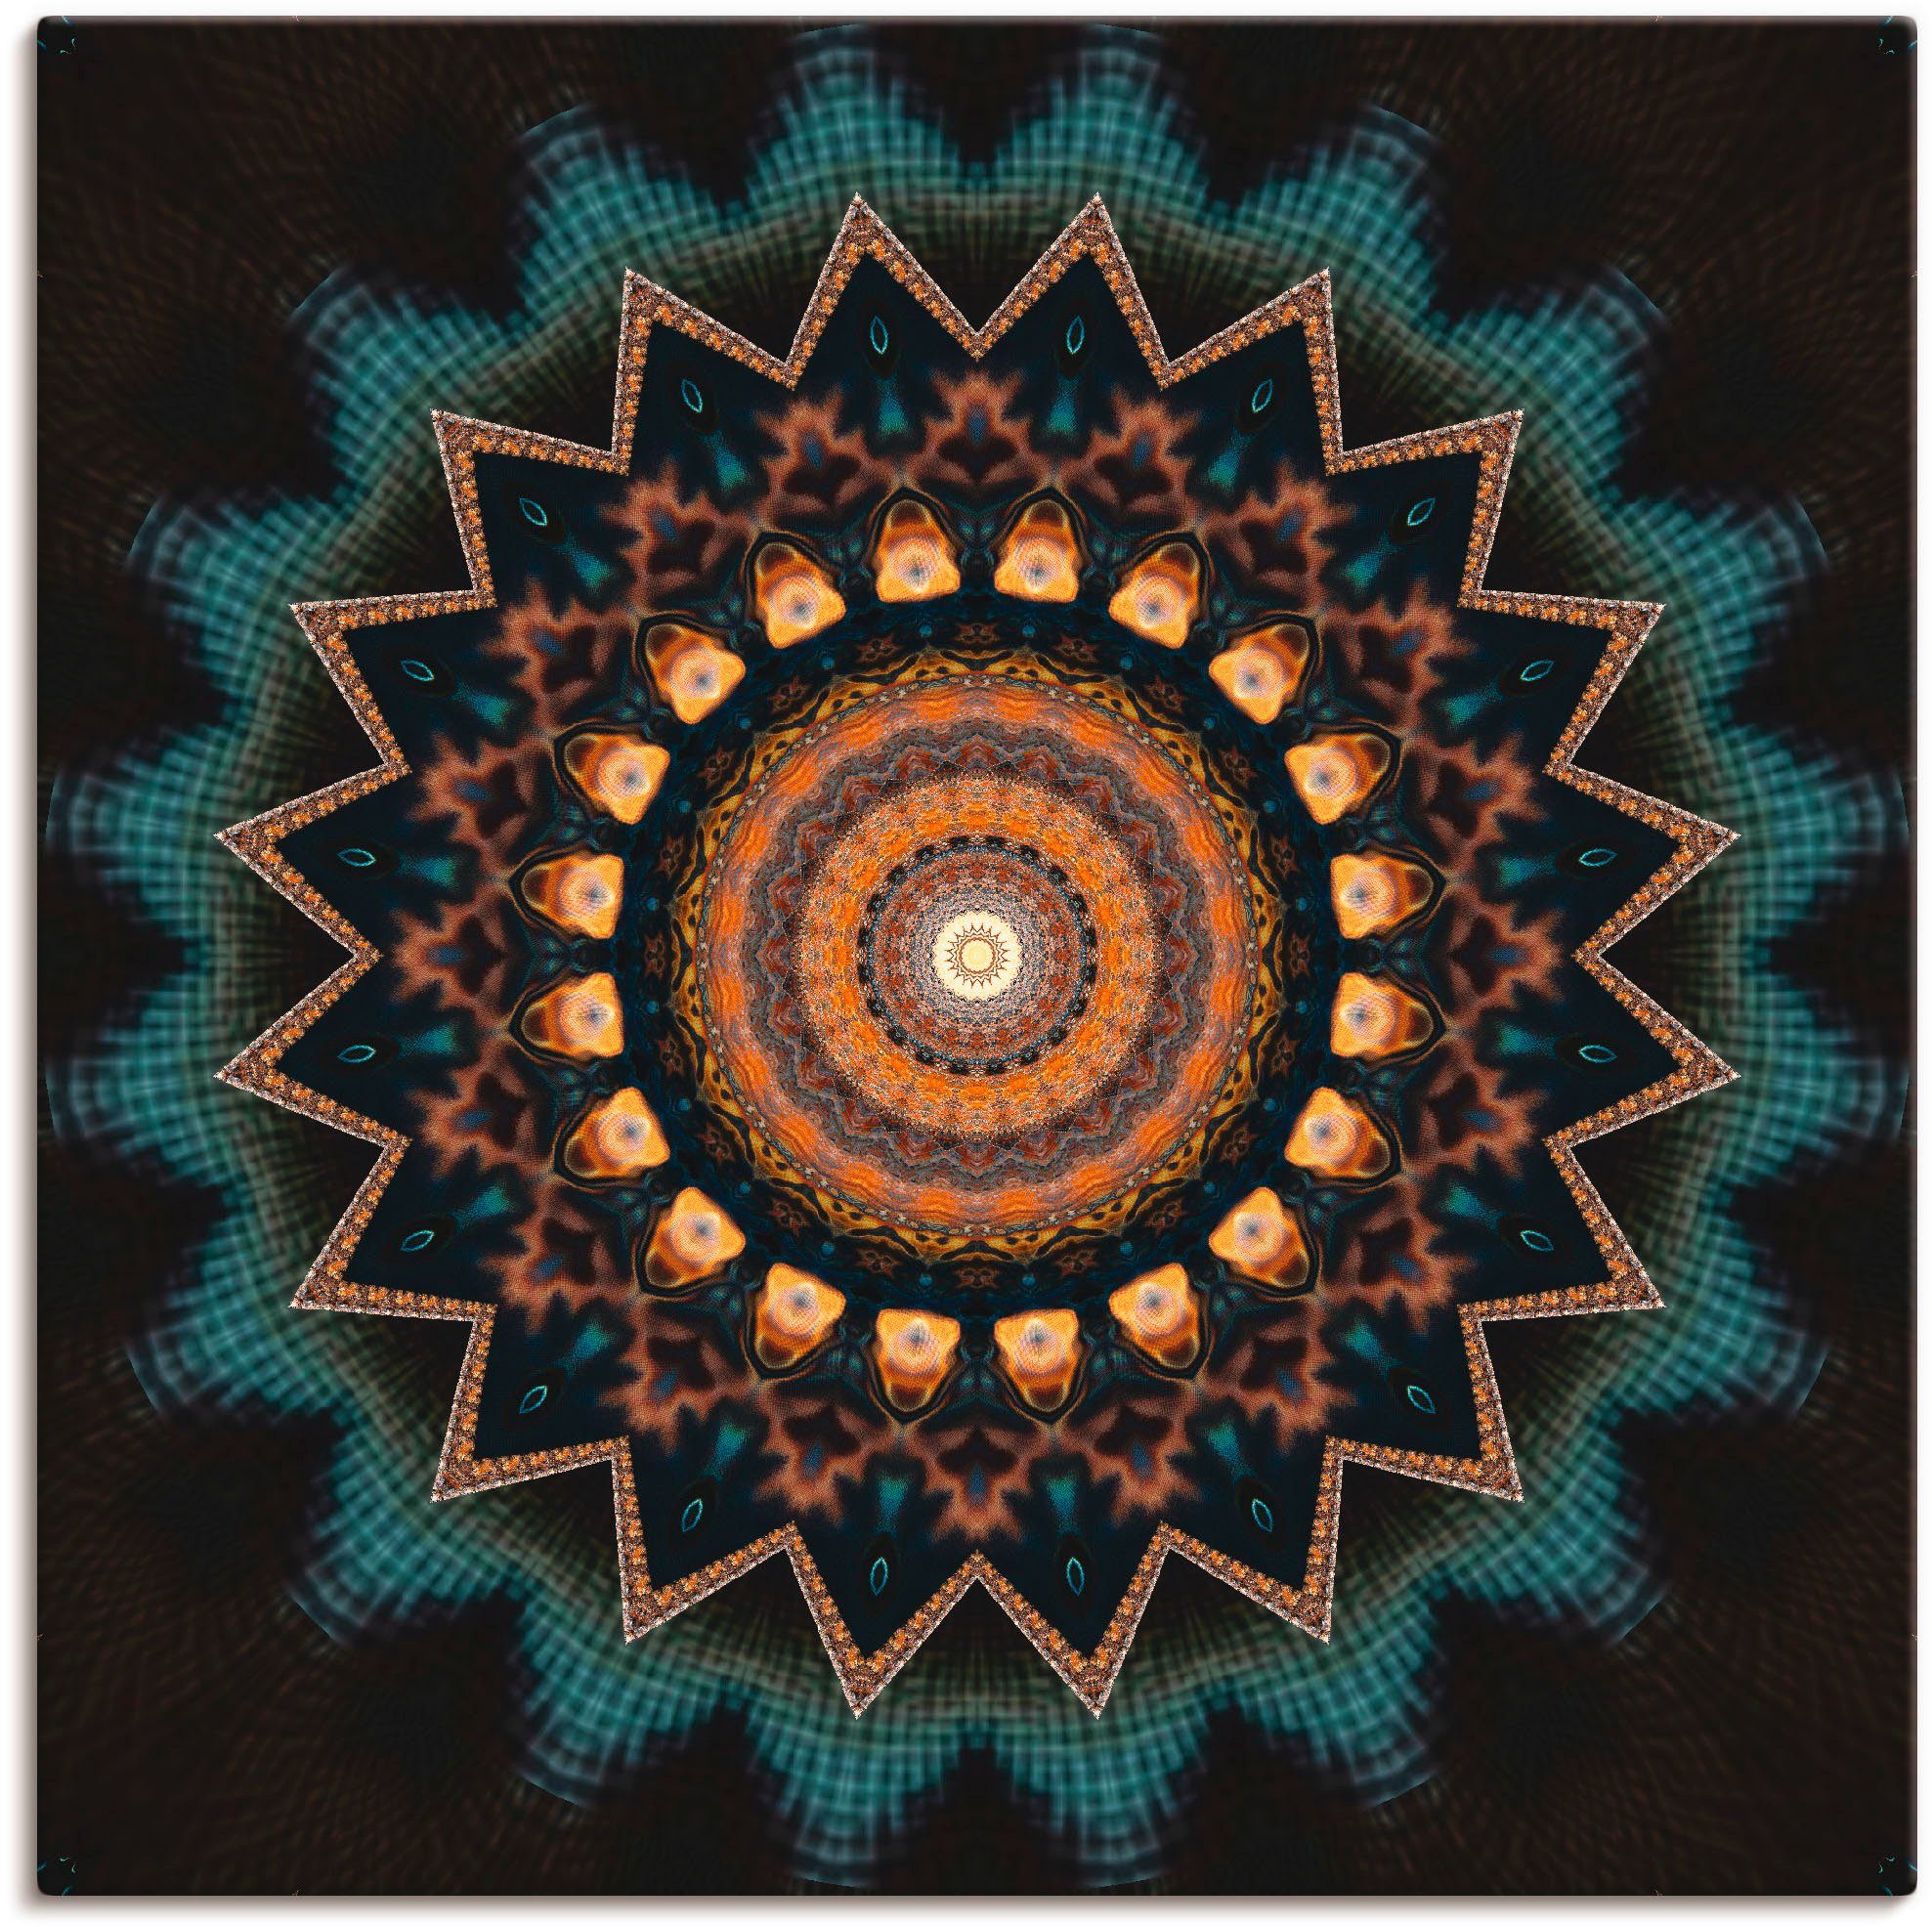 Artland Artprint Mandala kosmisch bewustzijn in vele afmetingen & productsoorten - artprint van aluminium / artprint voor buiten, artprint op linnen, poster, muursticker / wandfoli